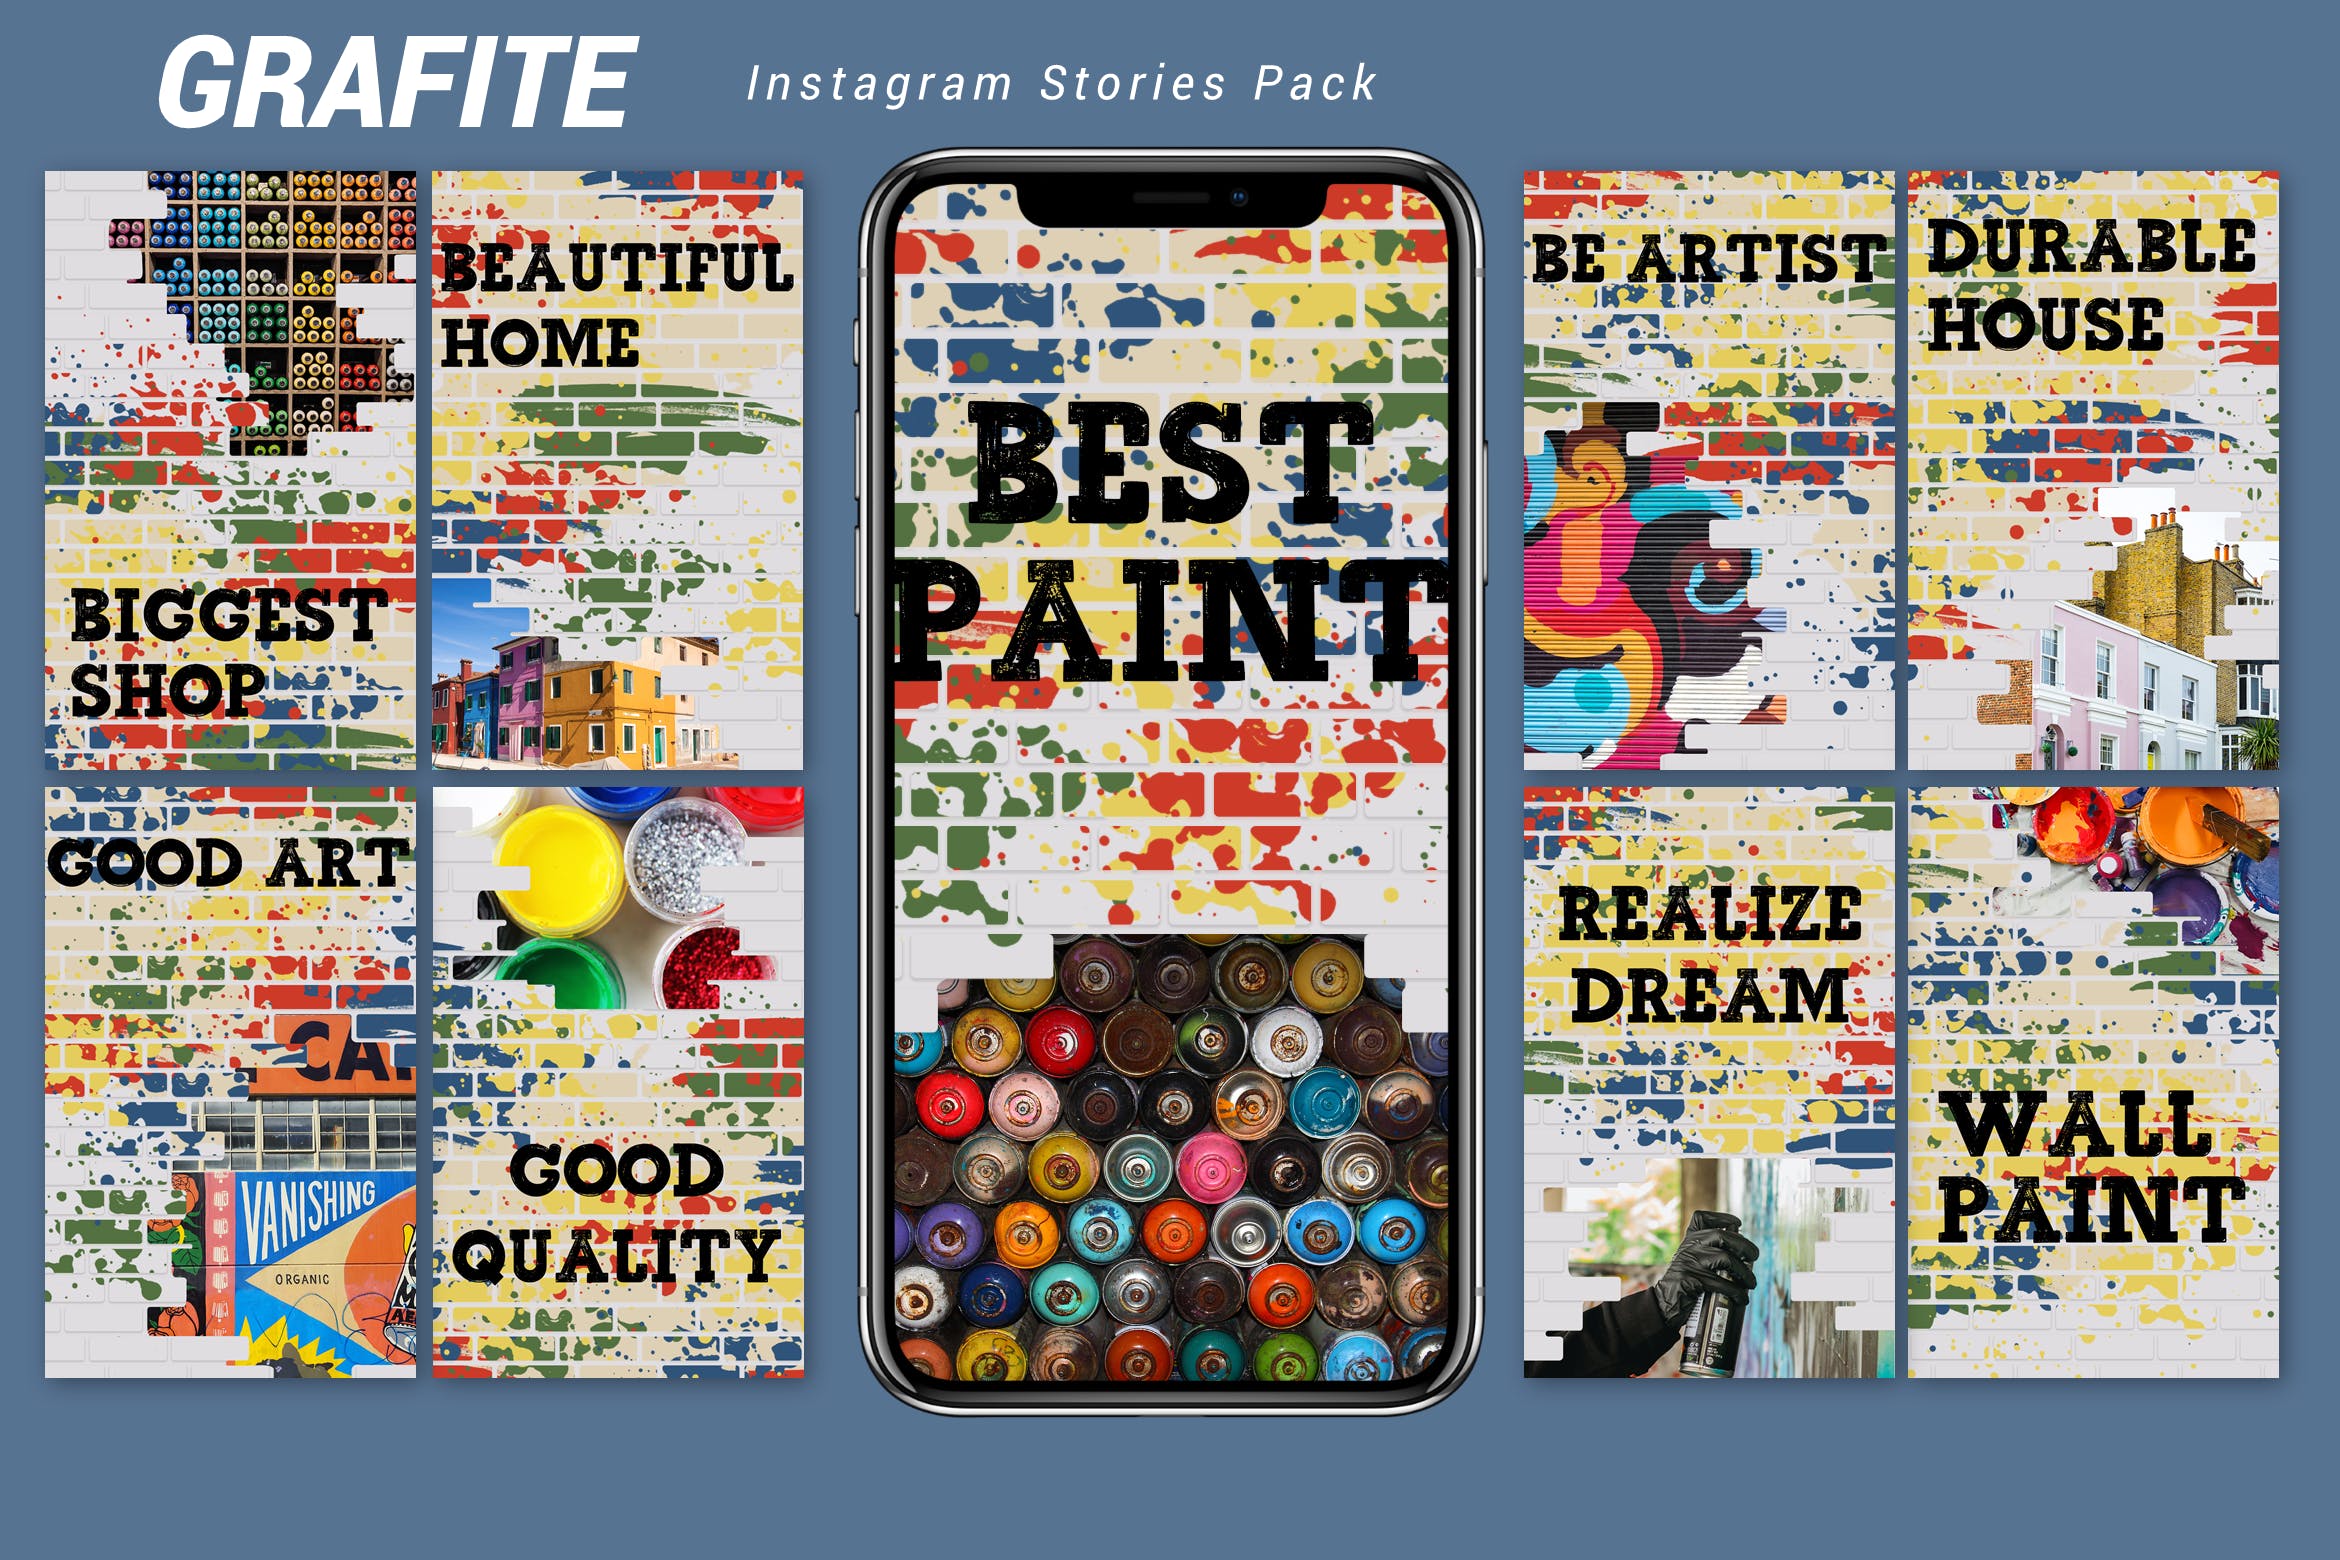 街头涂鸦自喷漆图画风格Instagram社交品牌故事素材包 Grafite – Instagram Story Pack插图